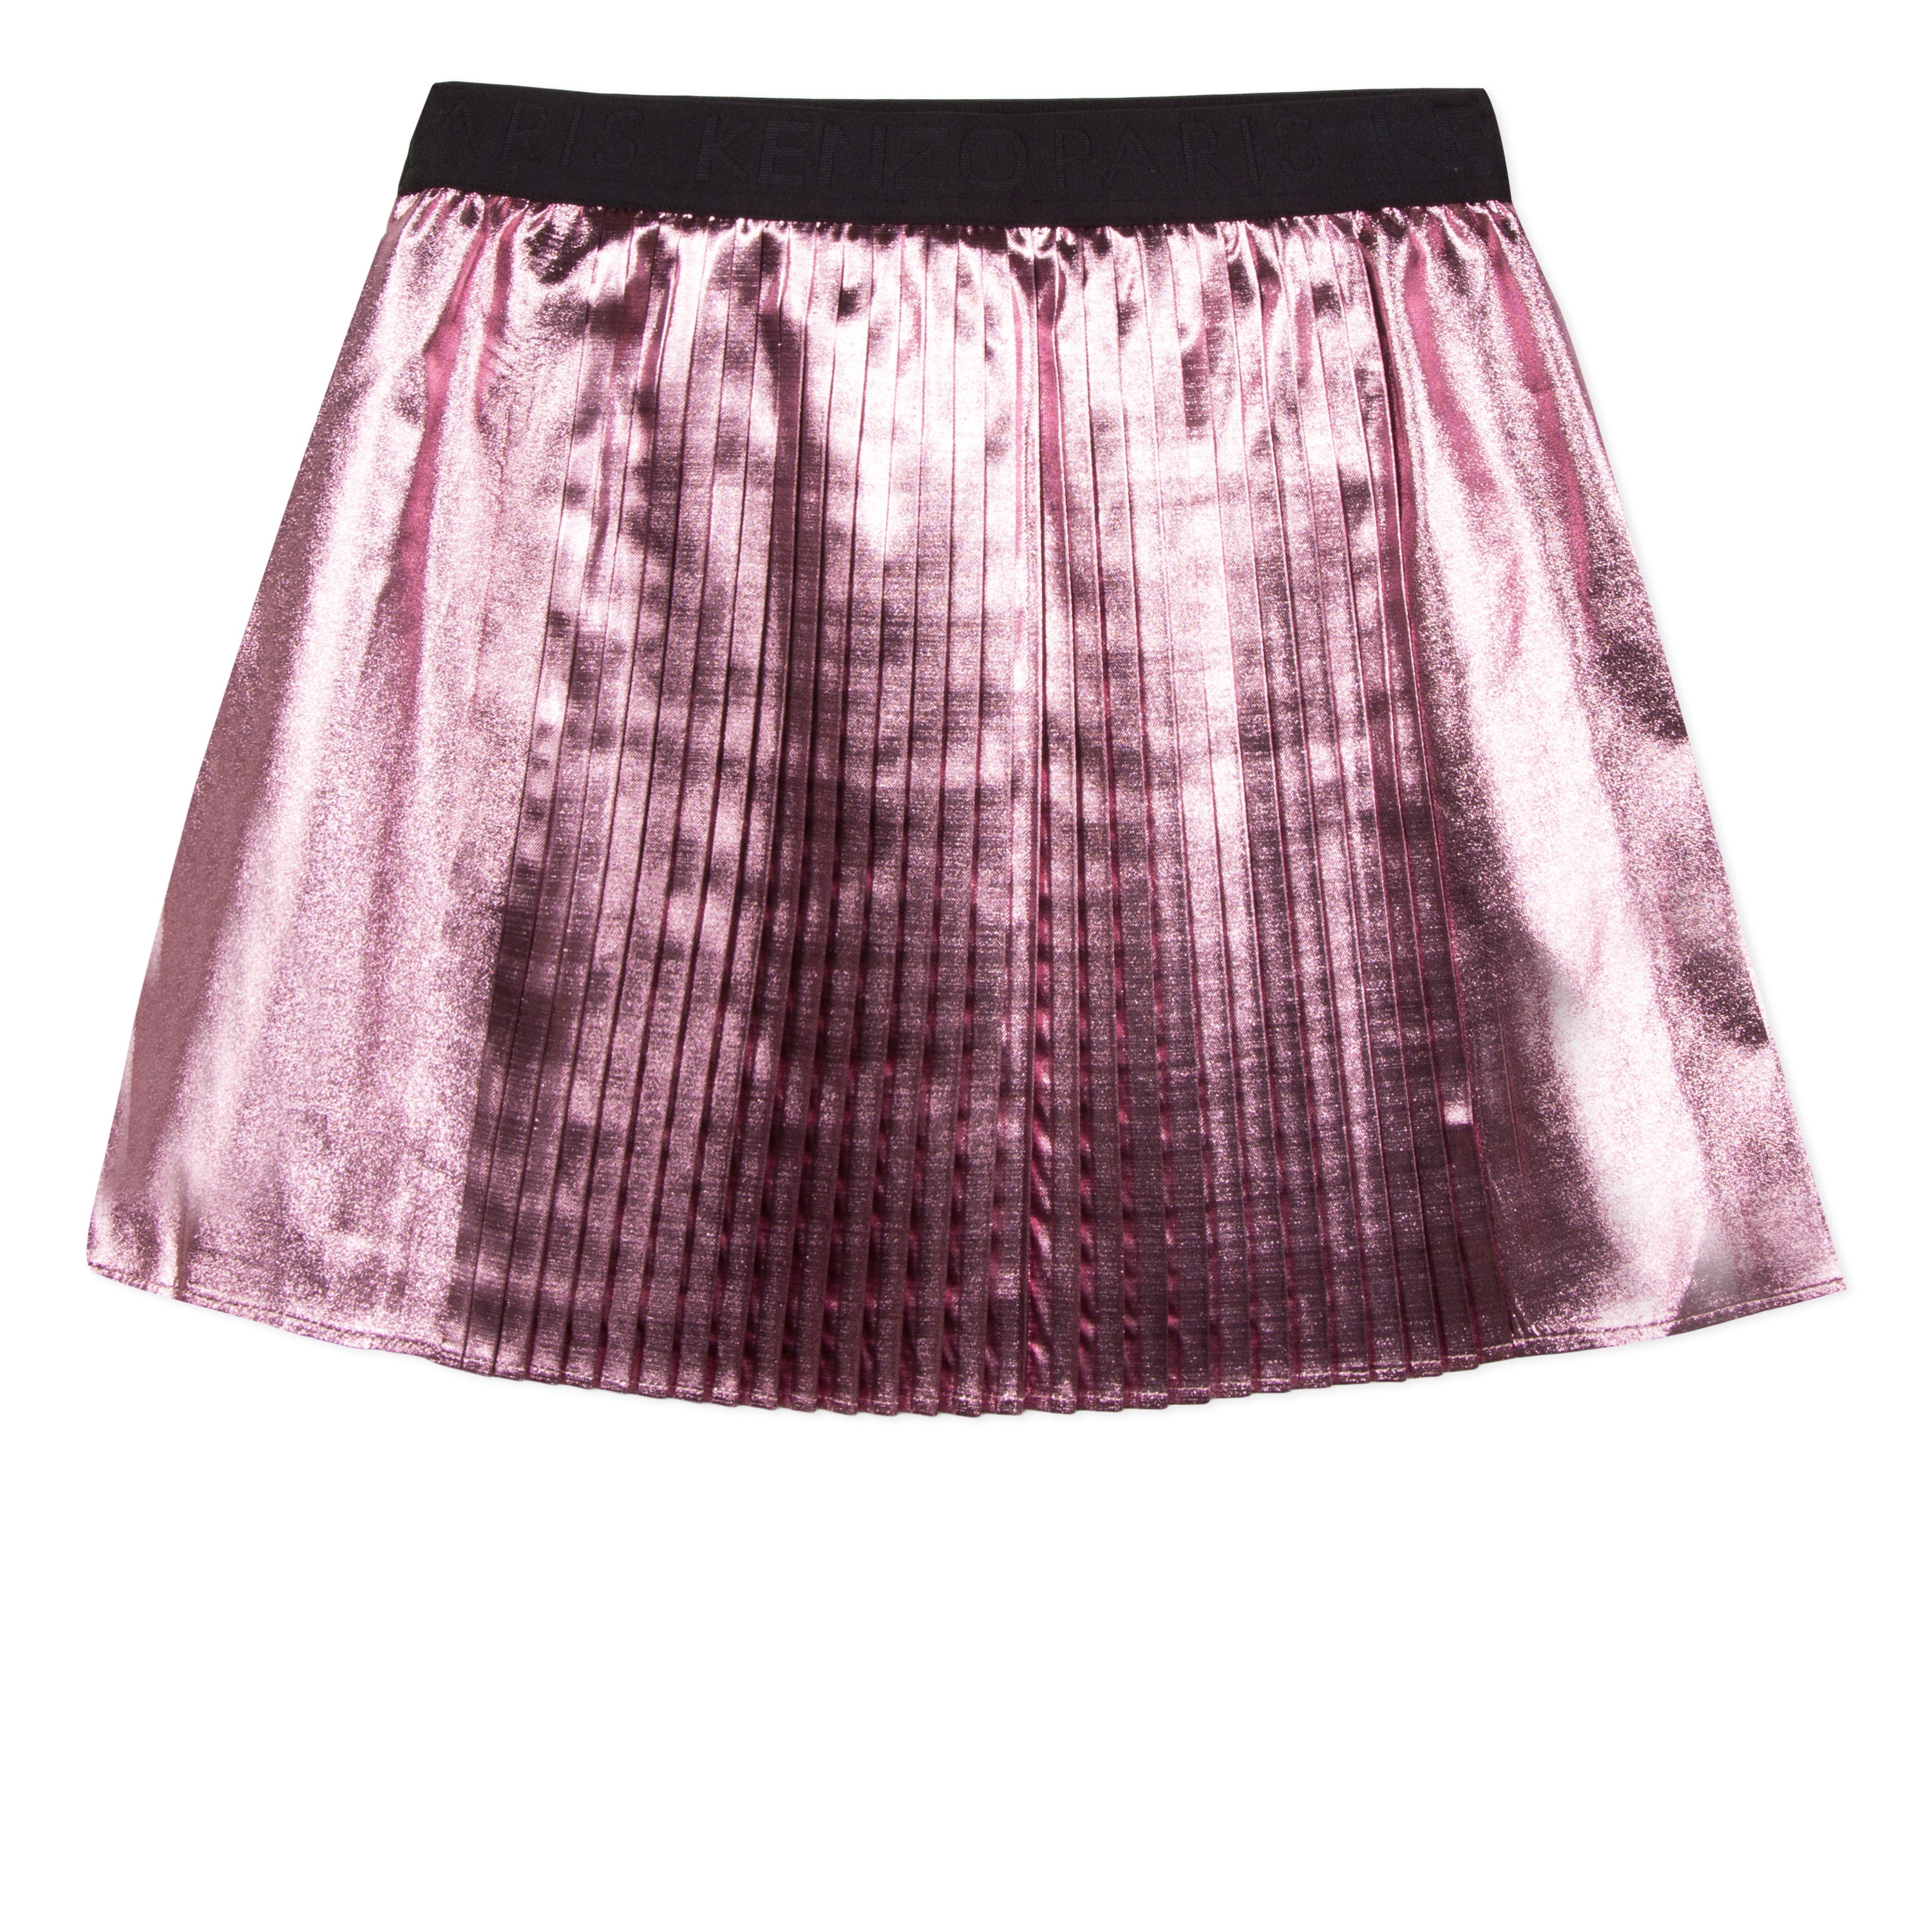 Girls Bright Pink Metallic Pleated Skirt